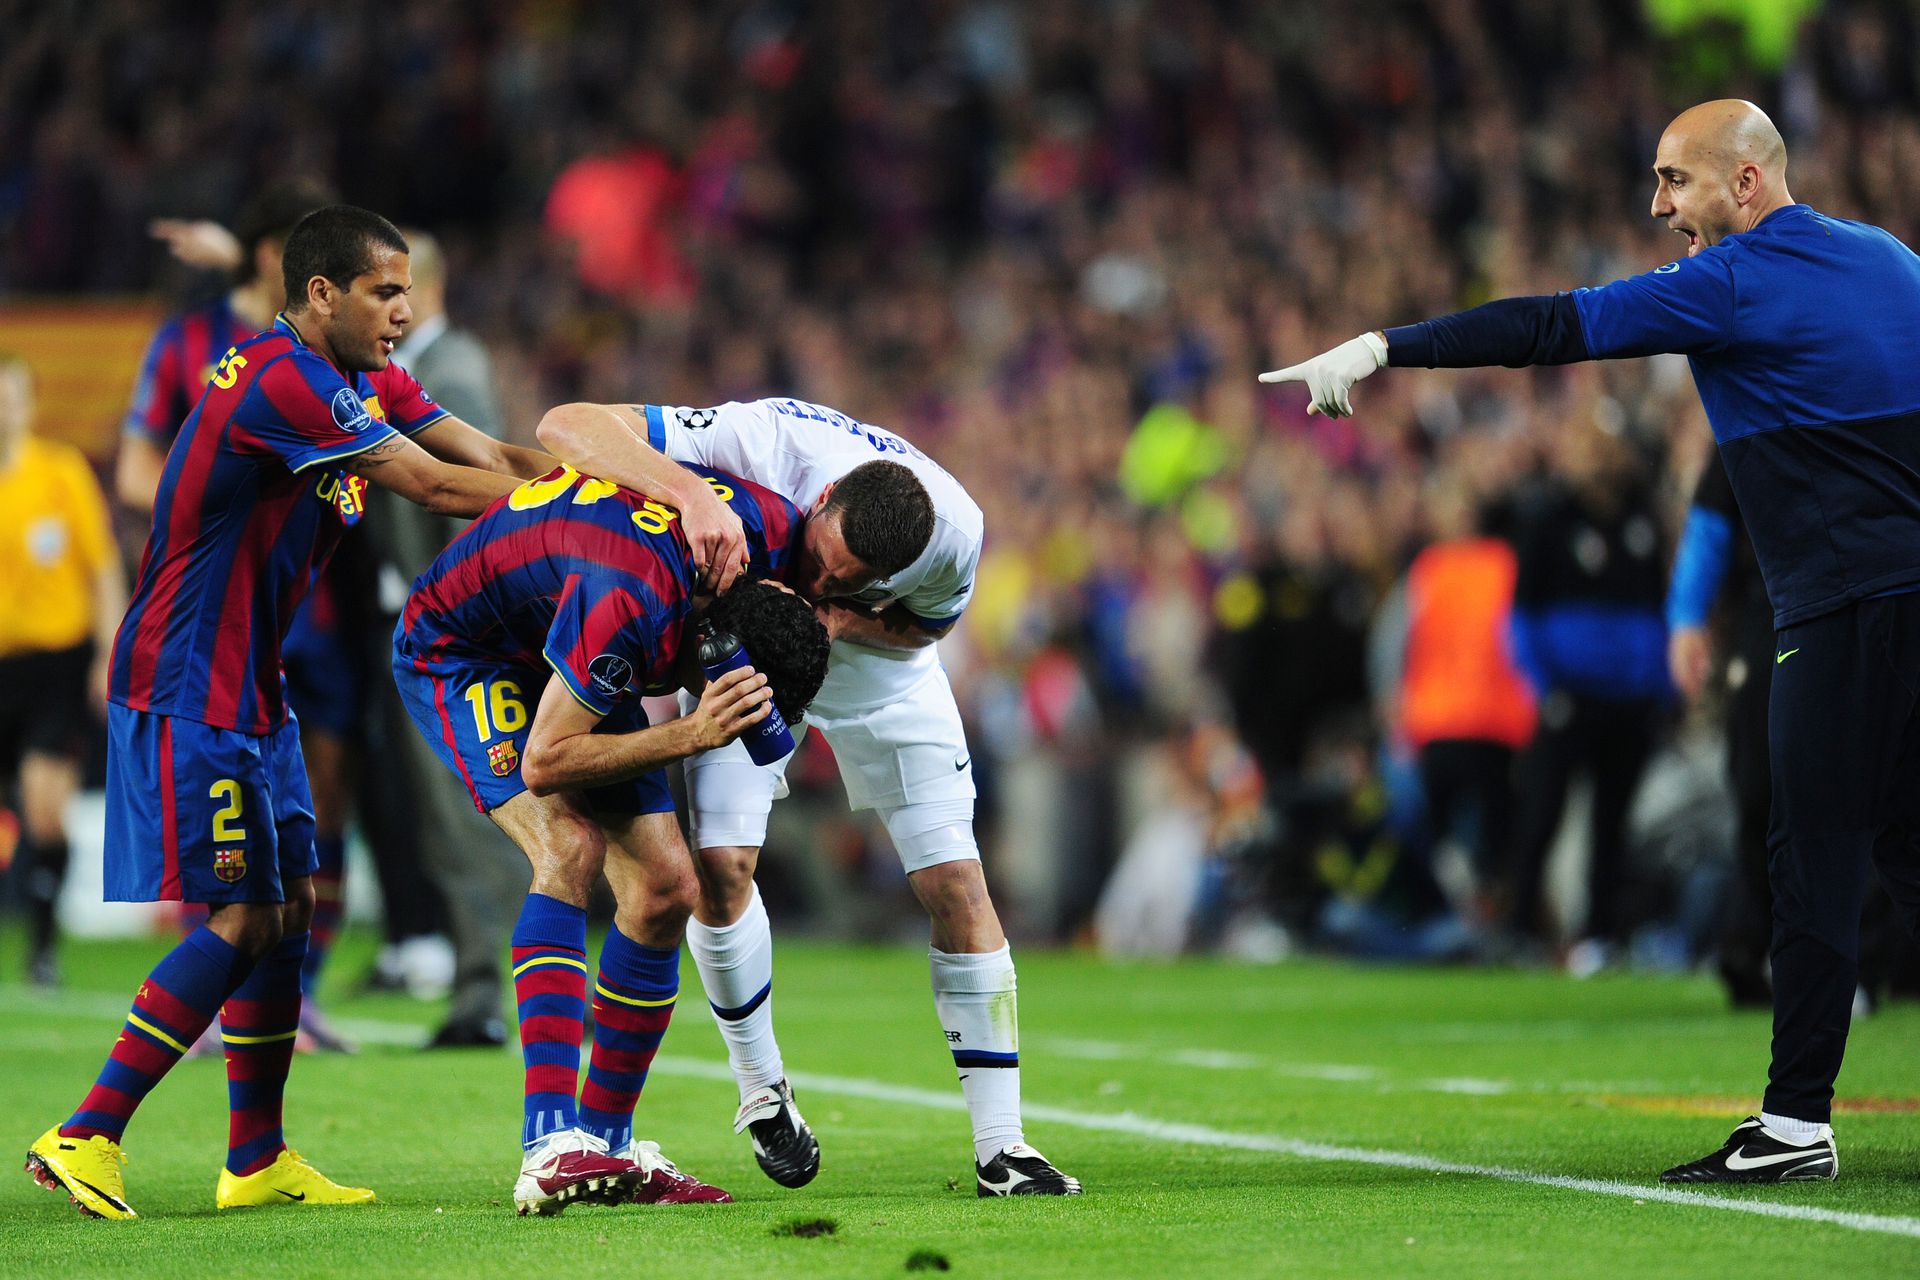 A Barcelona elleni 2010-es BL-elődöntőn izzott a levegő, ám az Inter végül kiharcolta a továbbjutást, a Bayern elleni döntő után pedig magasba emelhette a serleget Fotó: Getty Images